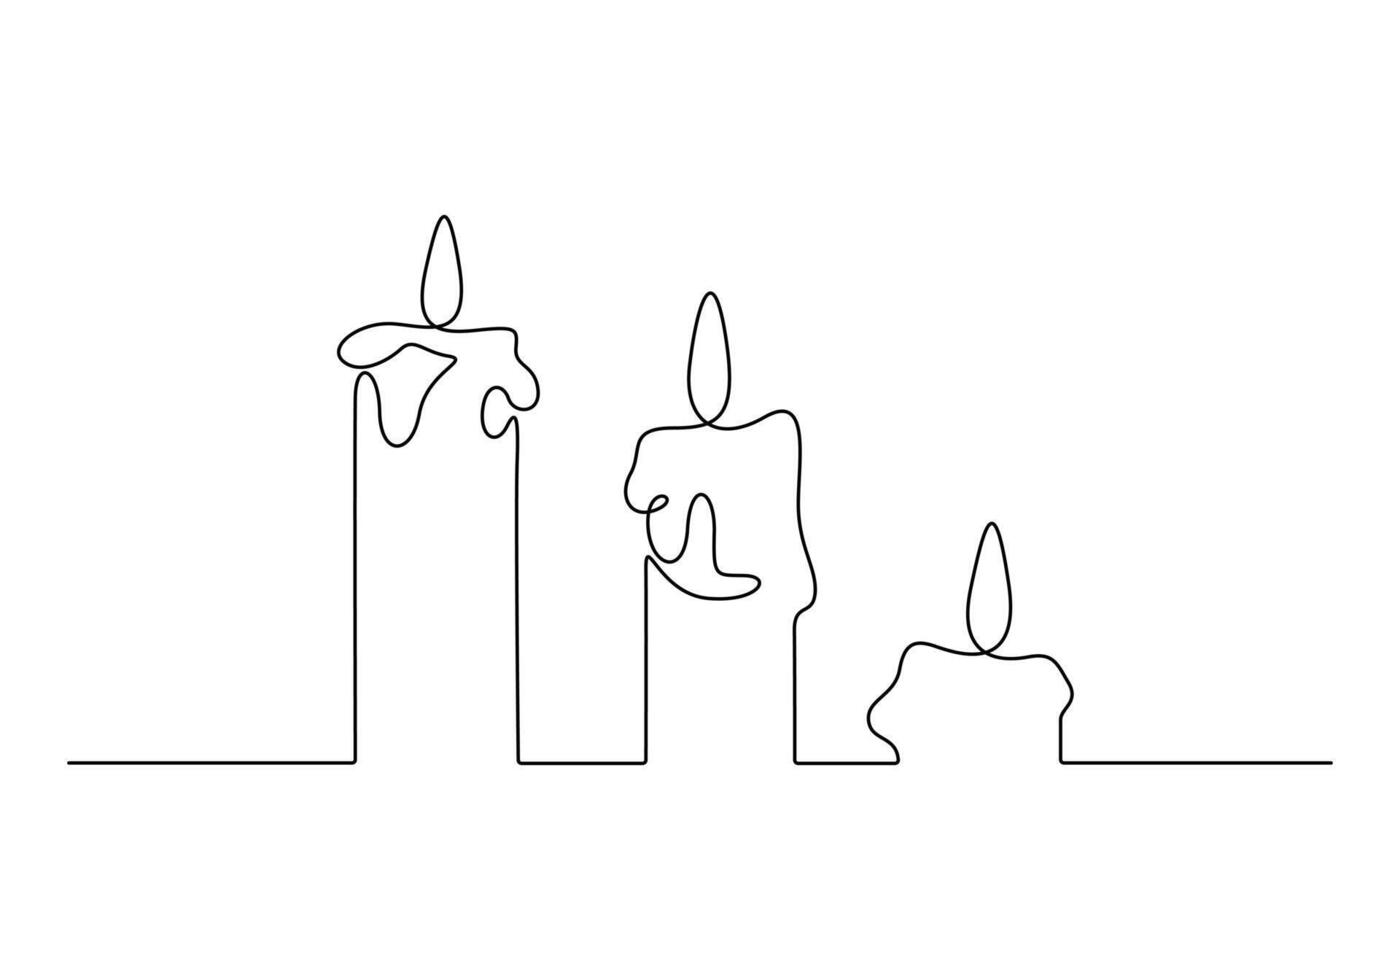 Trois bougies dans un continu ligne dessin vecteur illustration